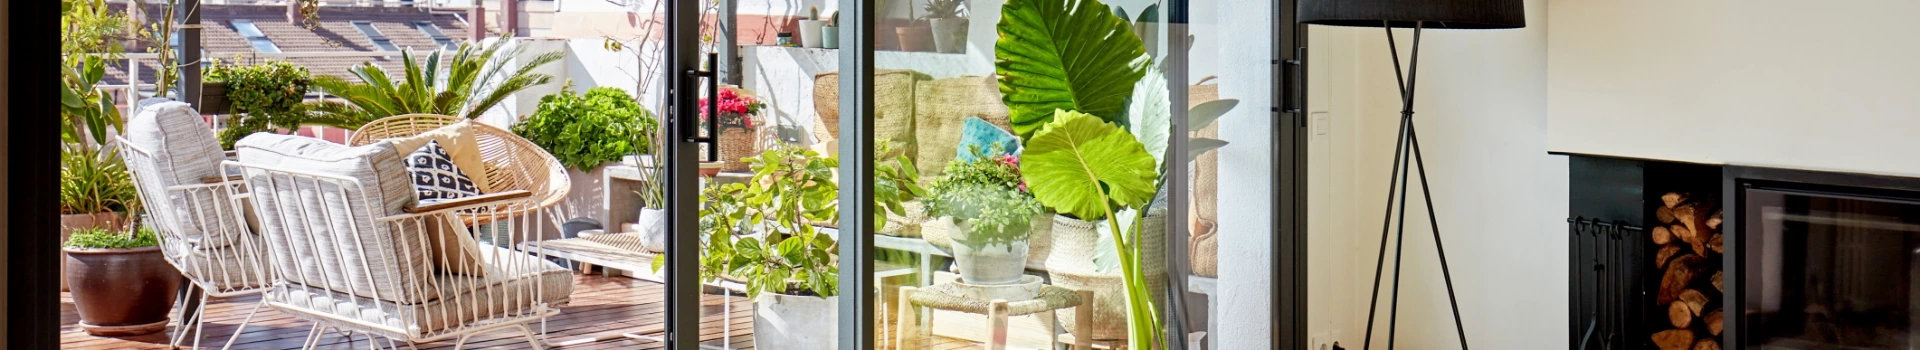 rośliny przy oknach